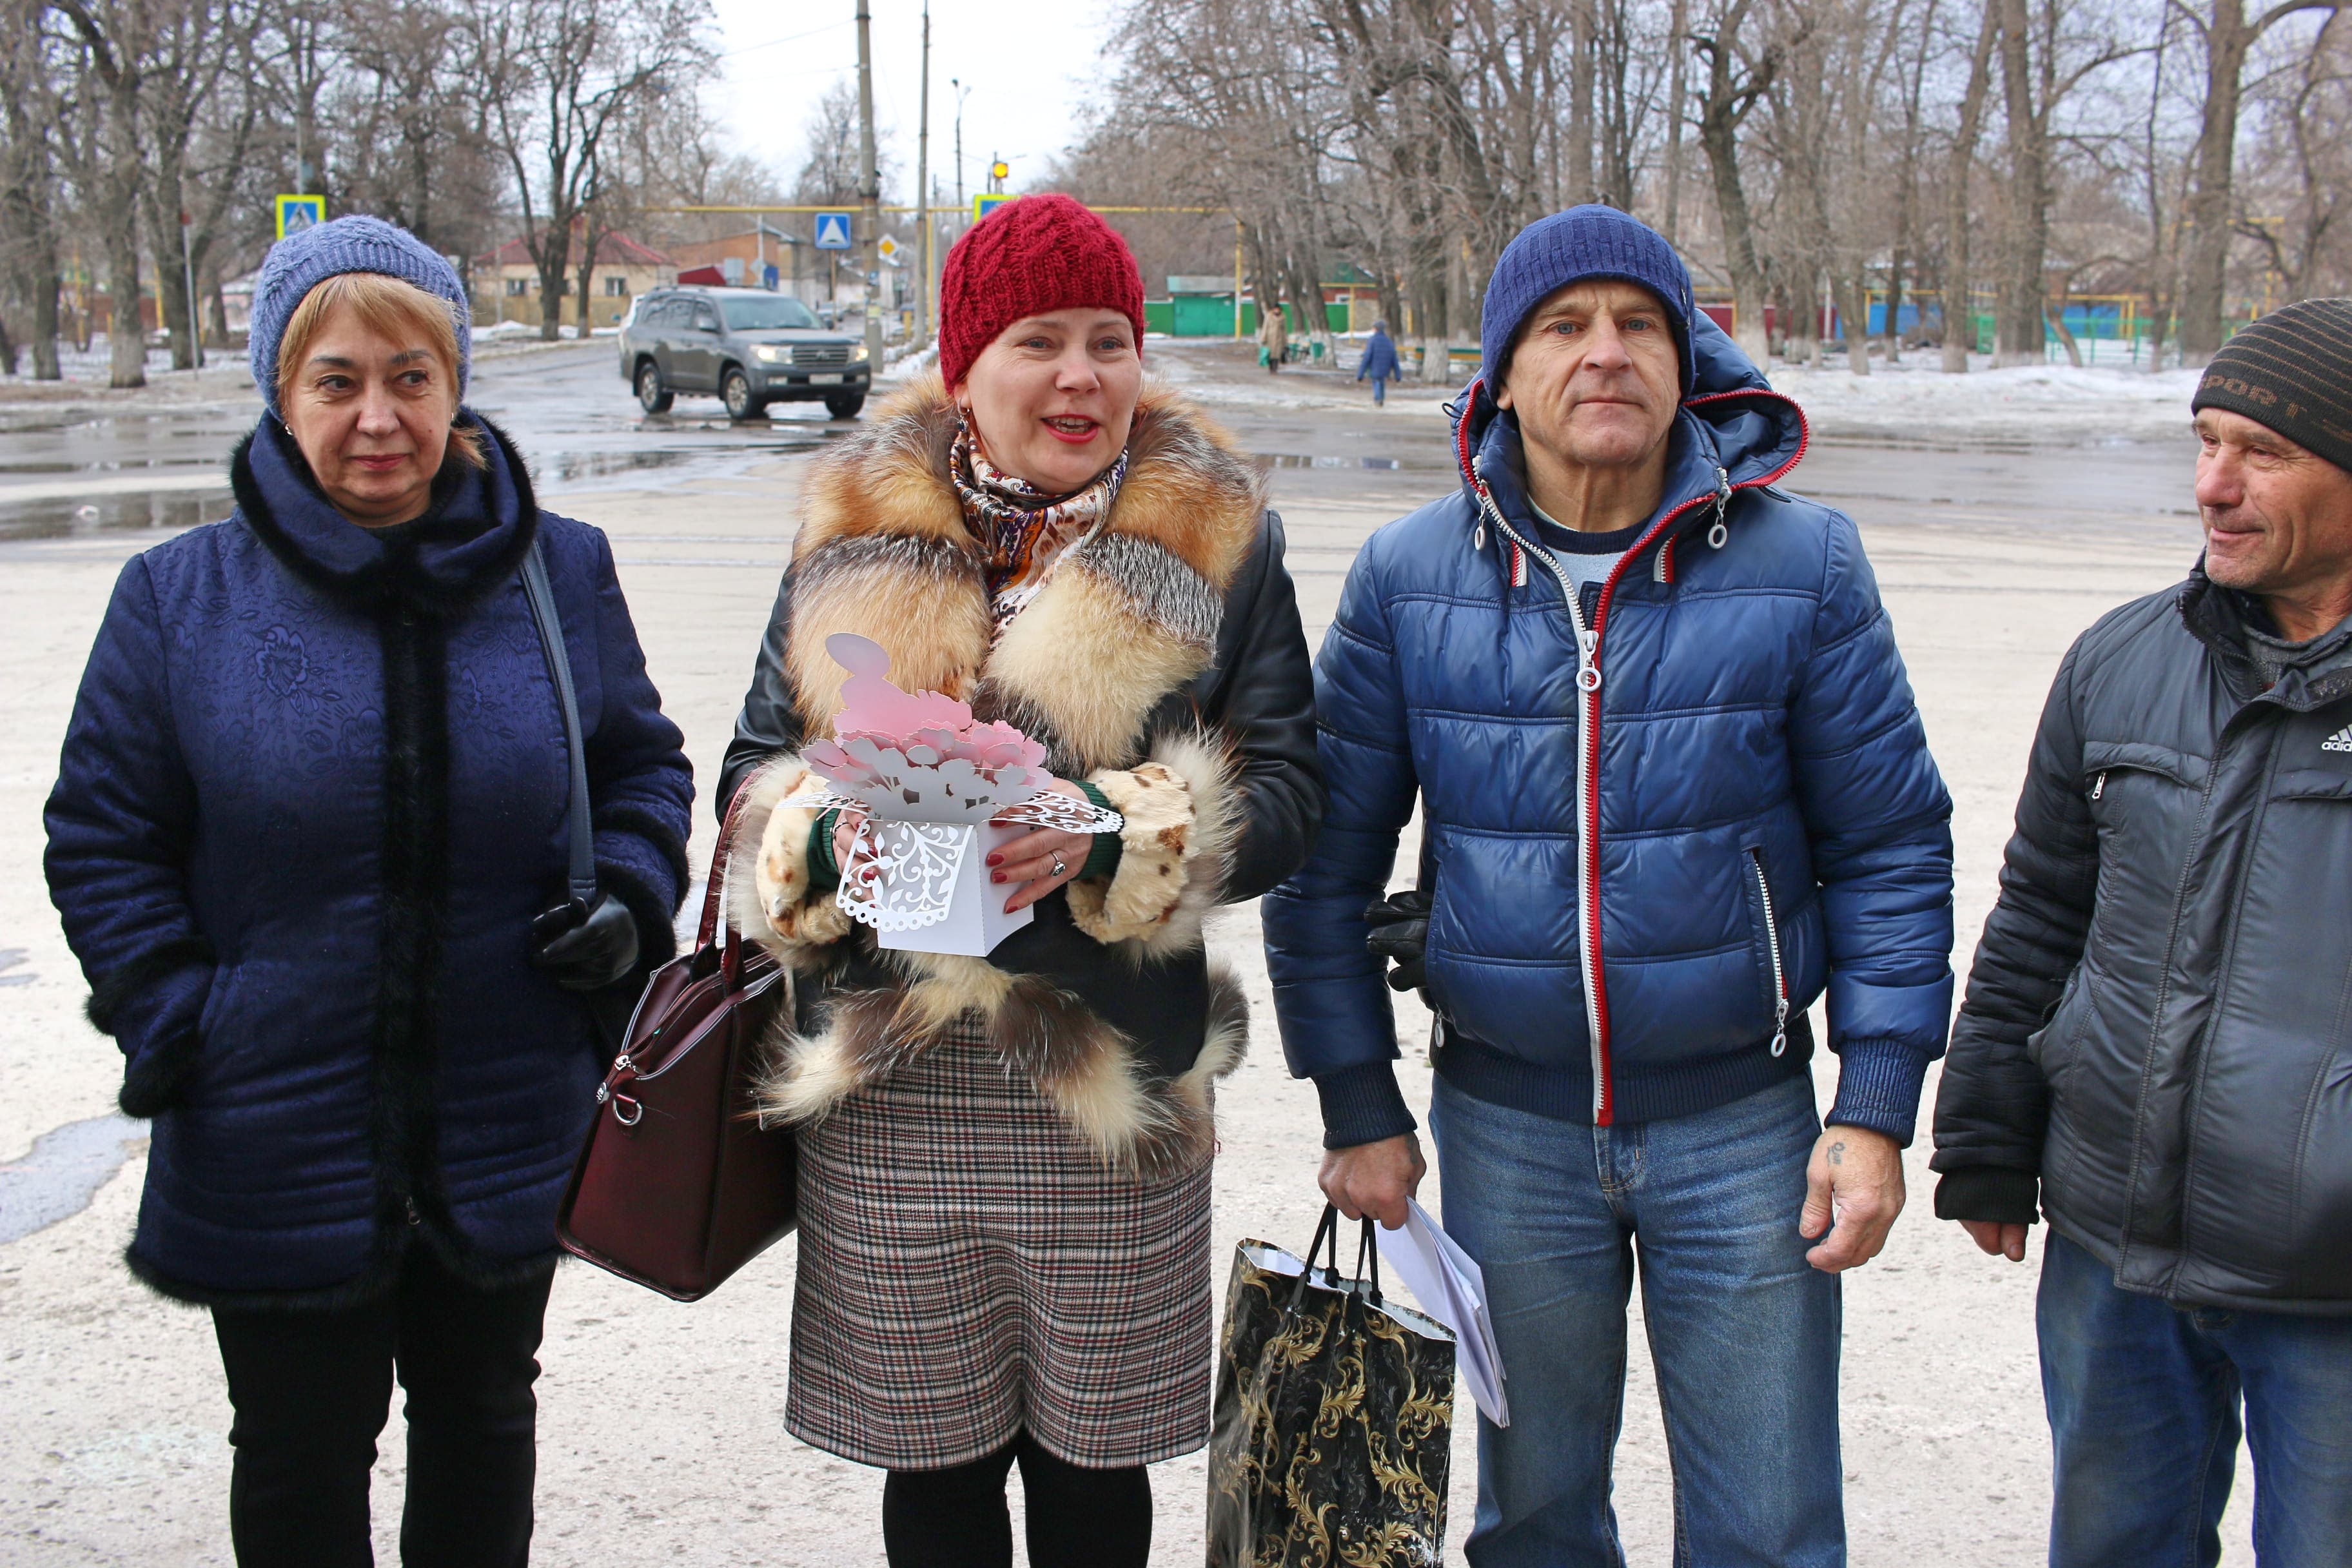 Участники пикета в Гуково 9 марта 2019 года поздравили женщин с праздником. Фото Вячеслава Прудникова для "Кавказского узла".